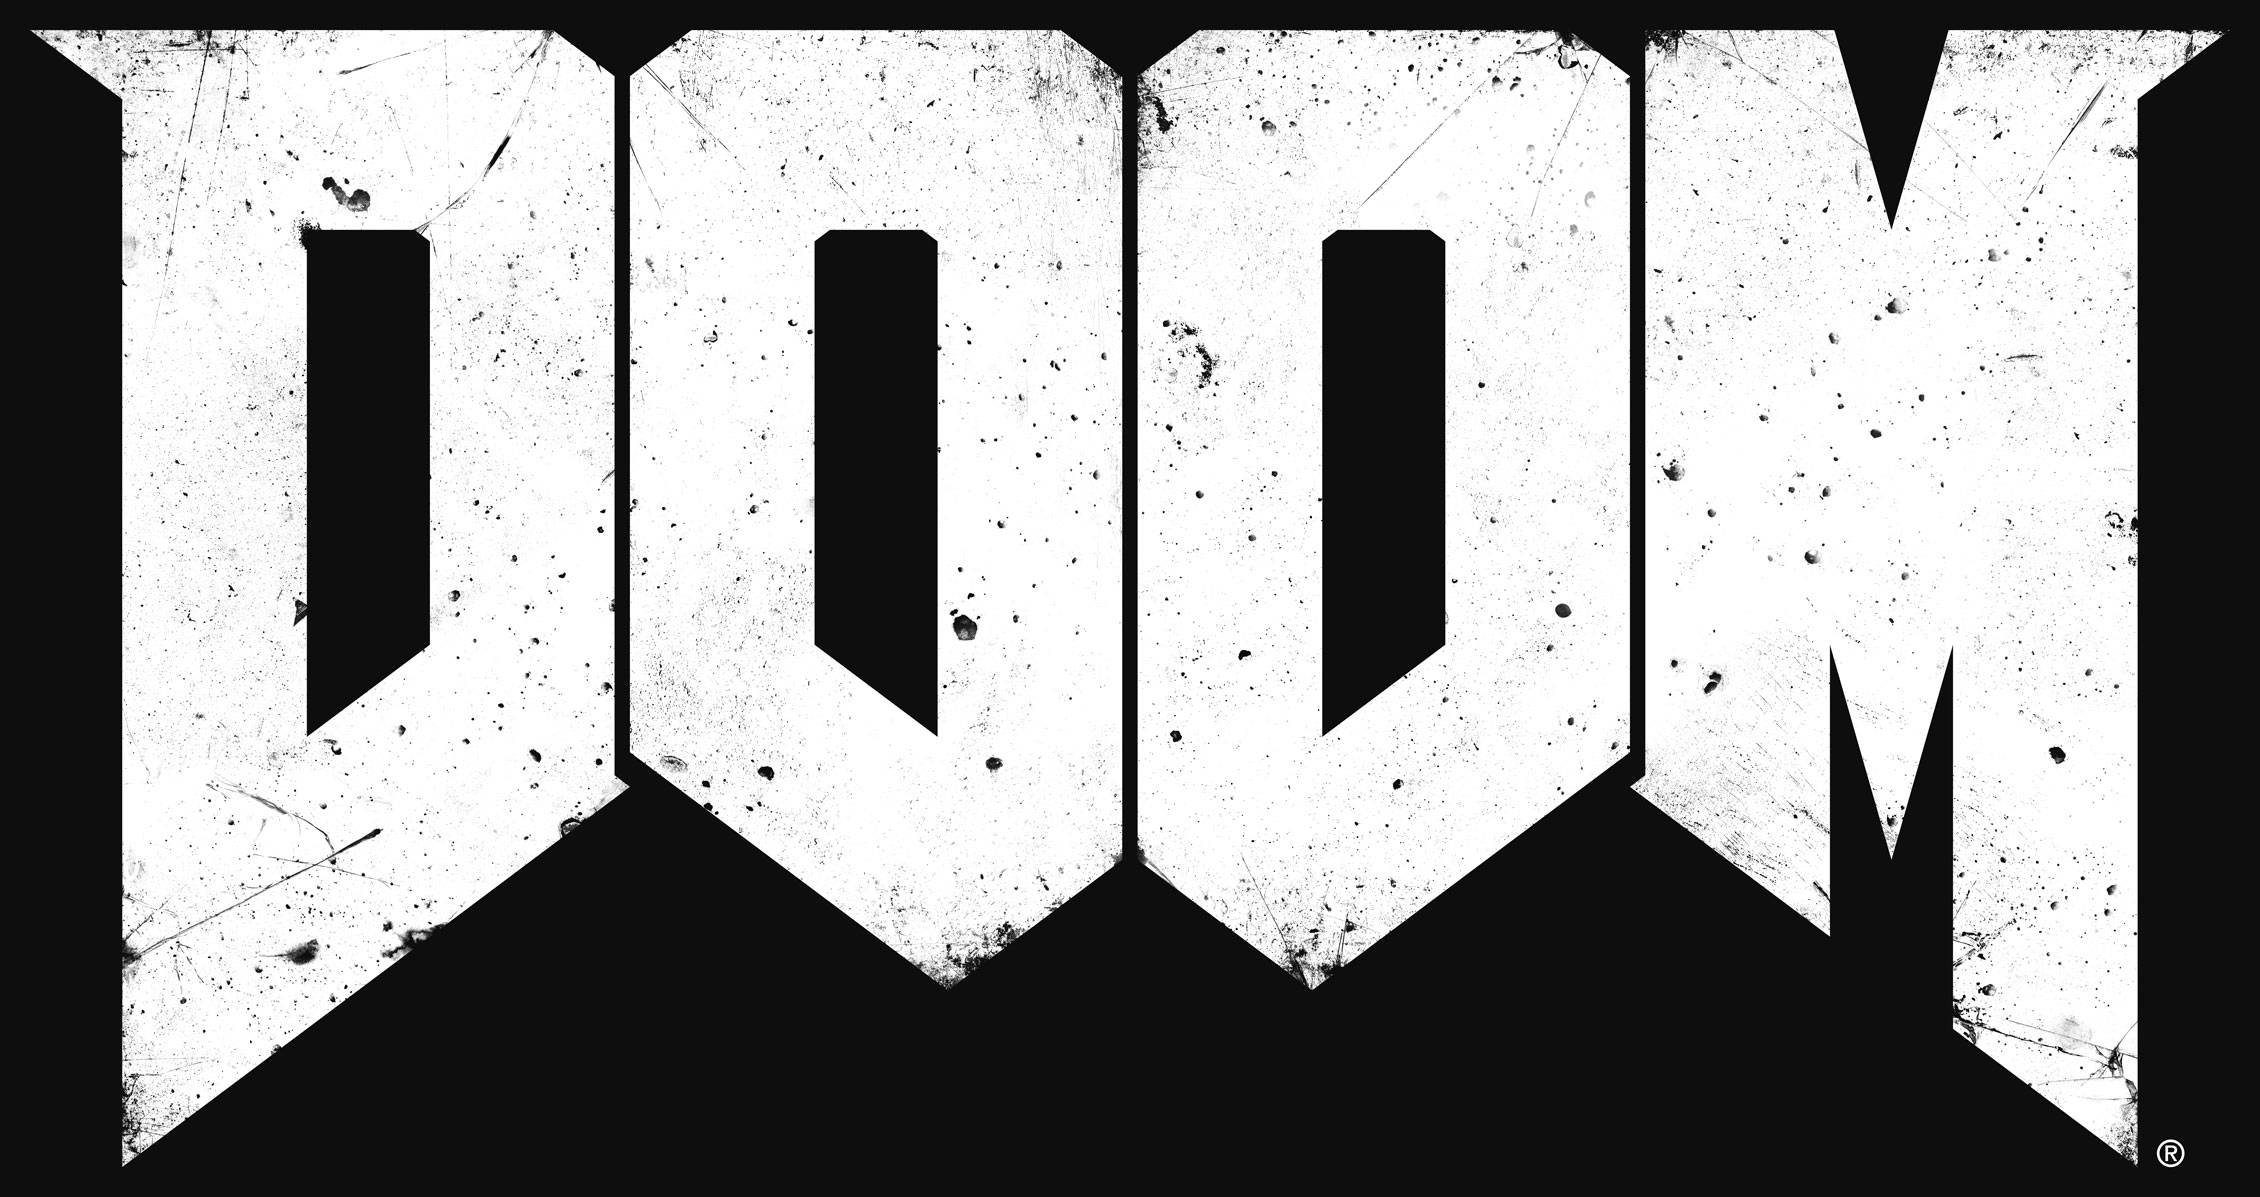 DOOM’s multiplayer modes revealed